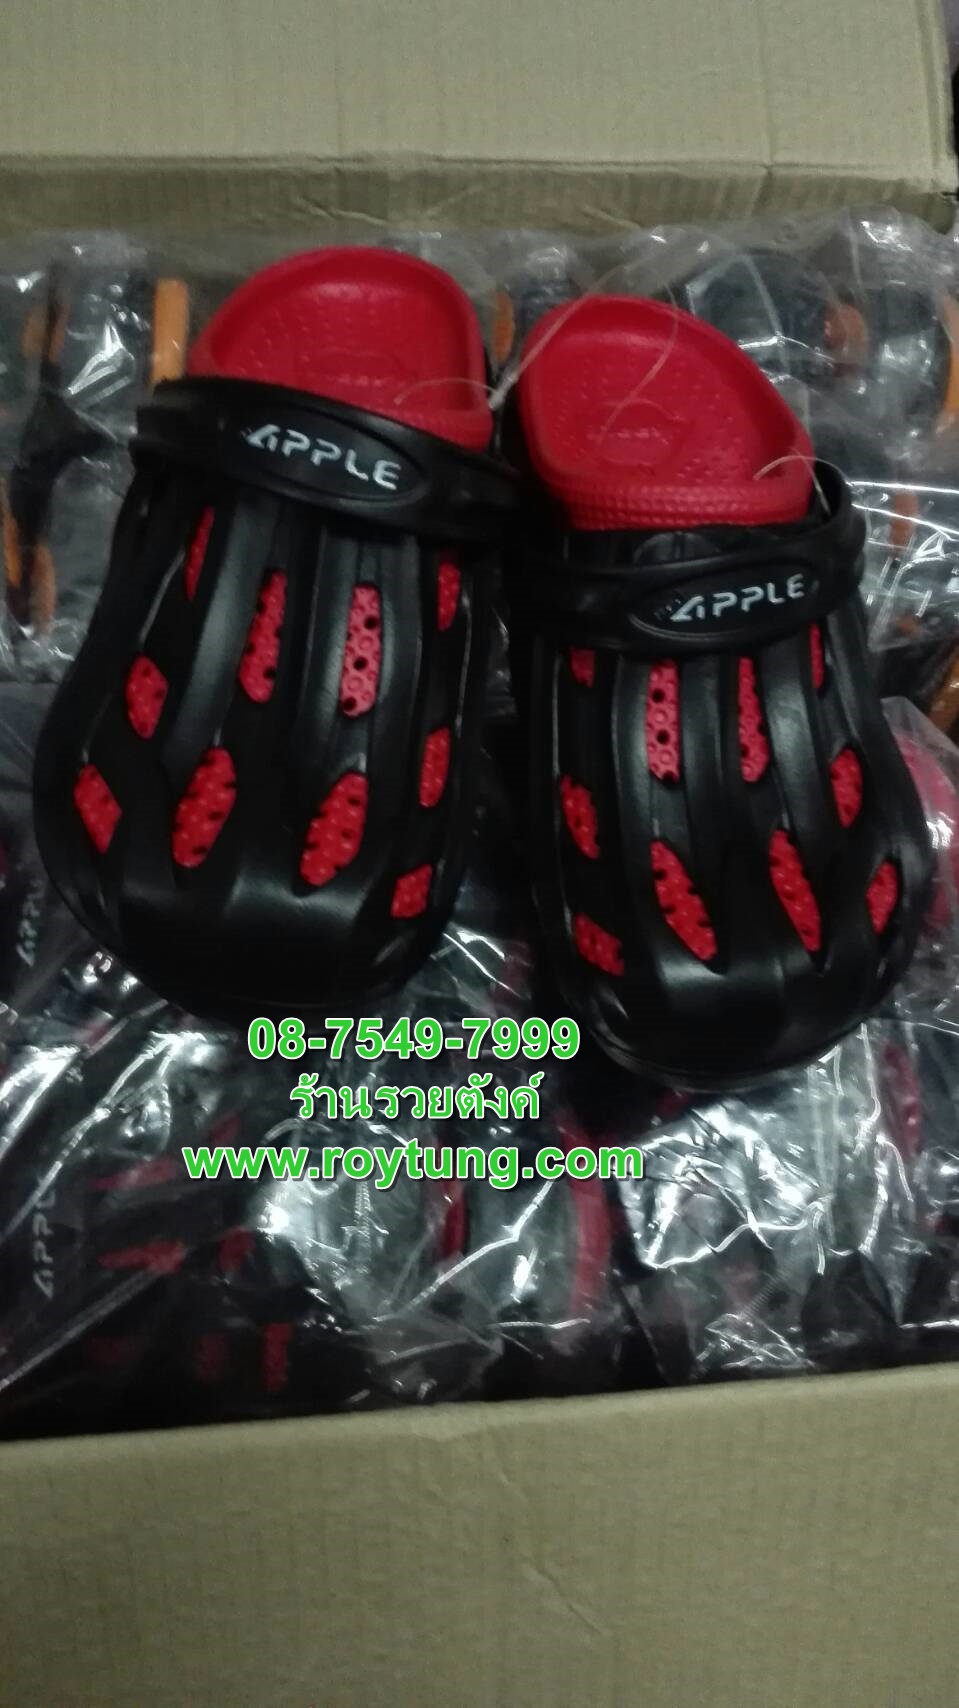 รูปภาพที่2 ของสินค้า : รองเท้าหัวโต คละสี คละไซต์ Red Apple ขายถูก